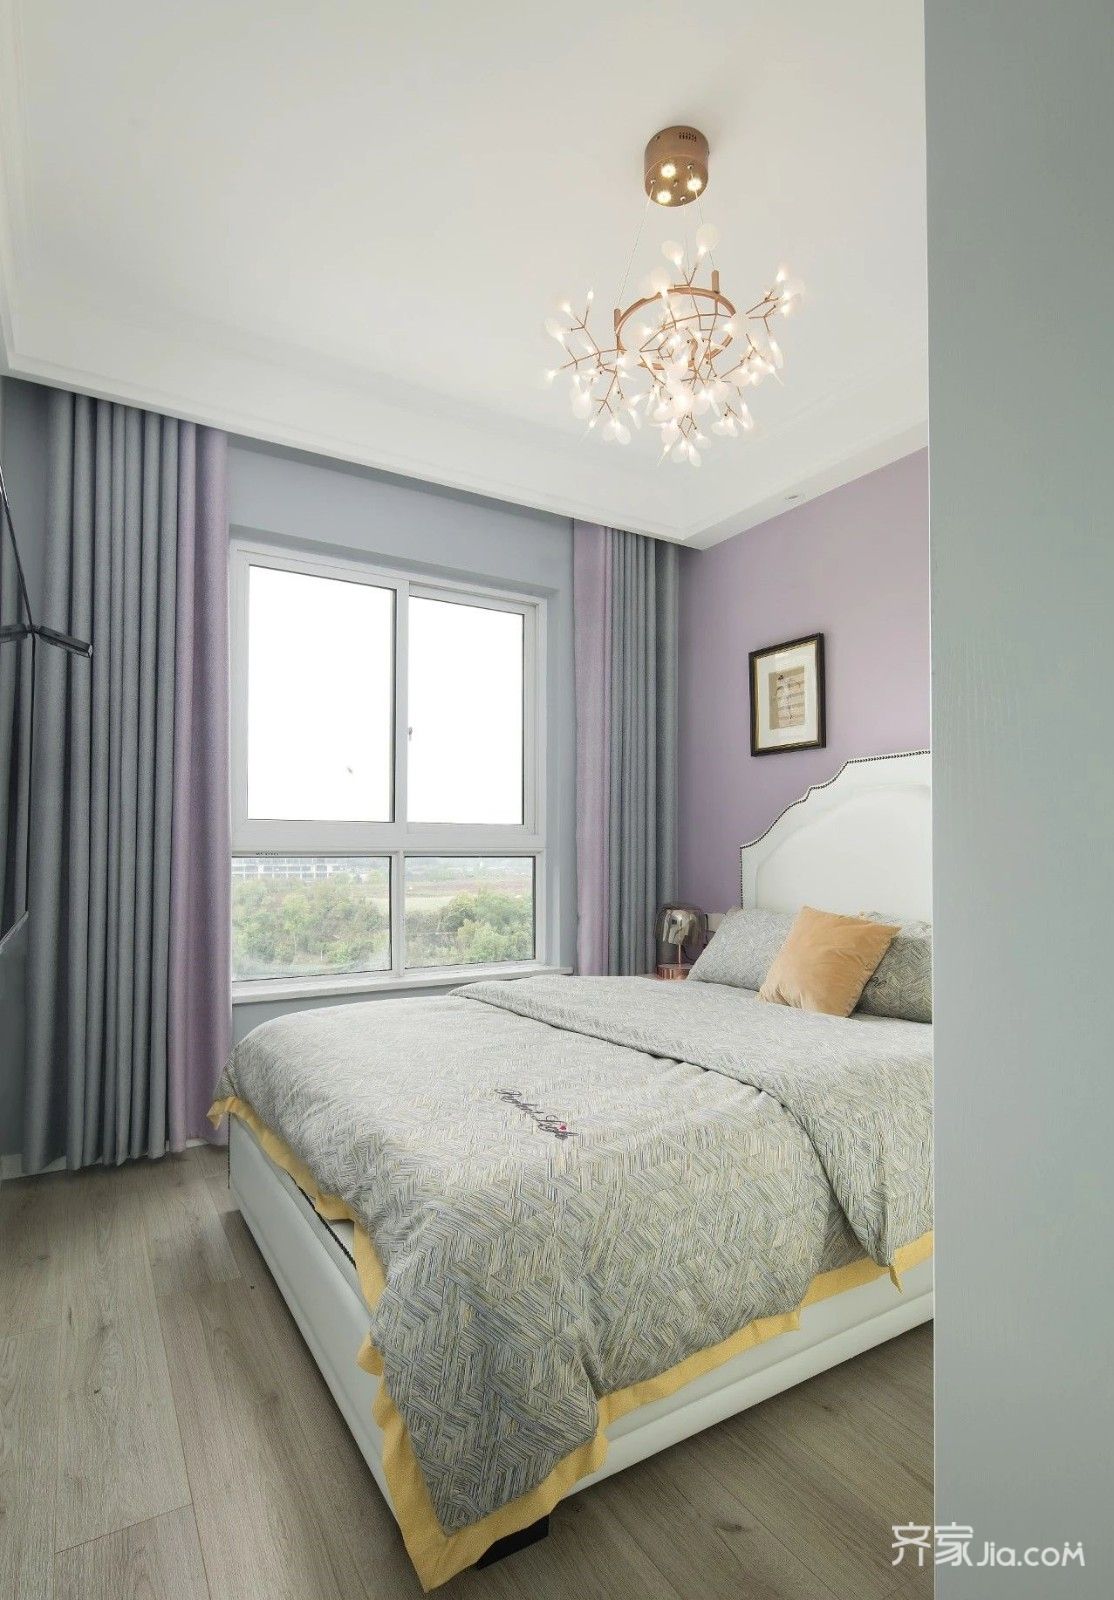 床头柜上金属台灯,在玻璃罩的装饰下,也让卧室显得更加优雅精致